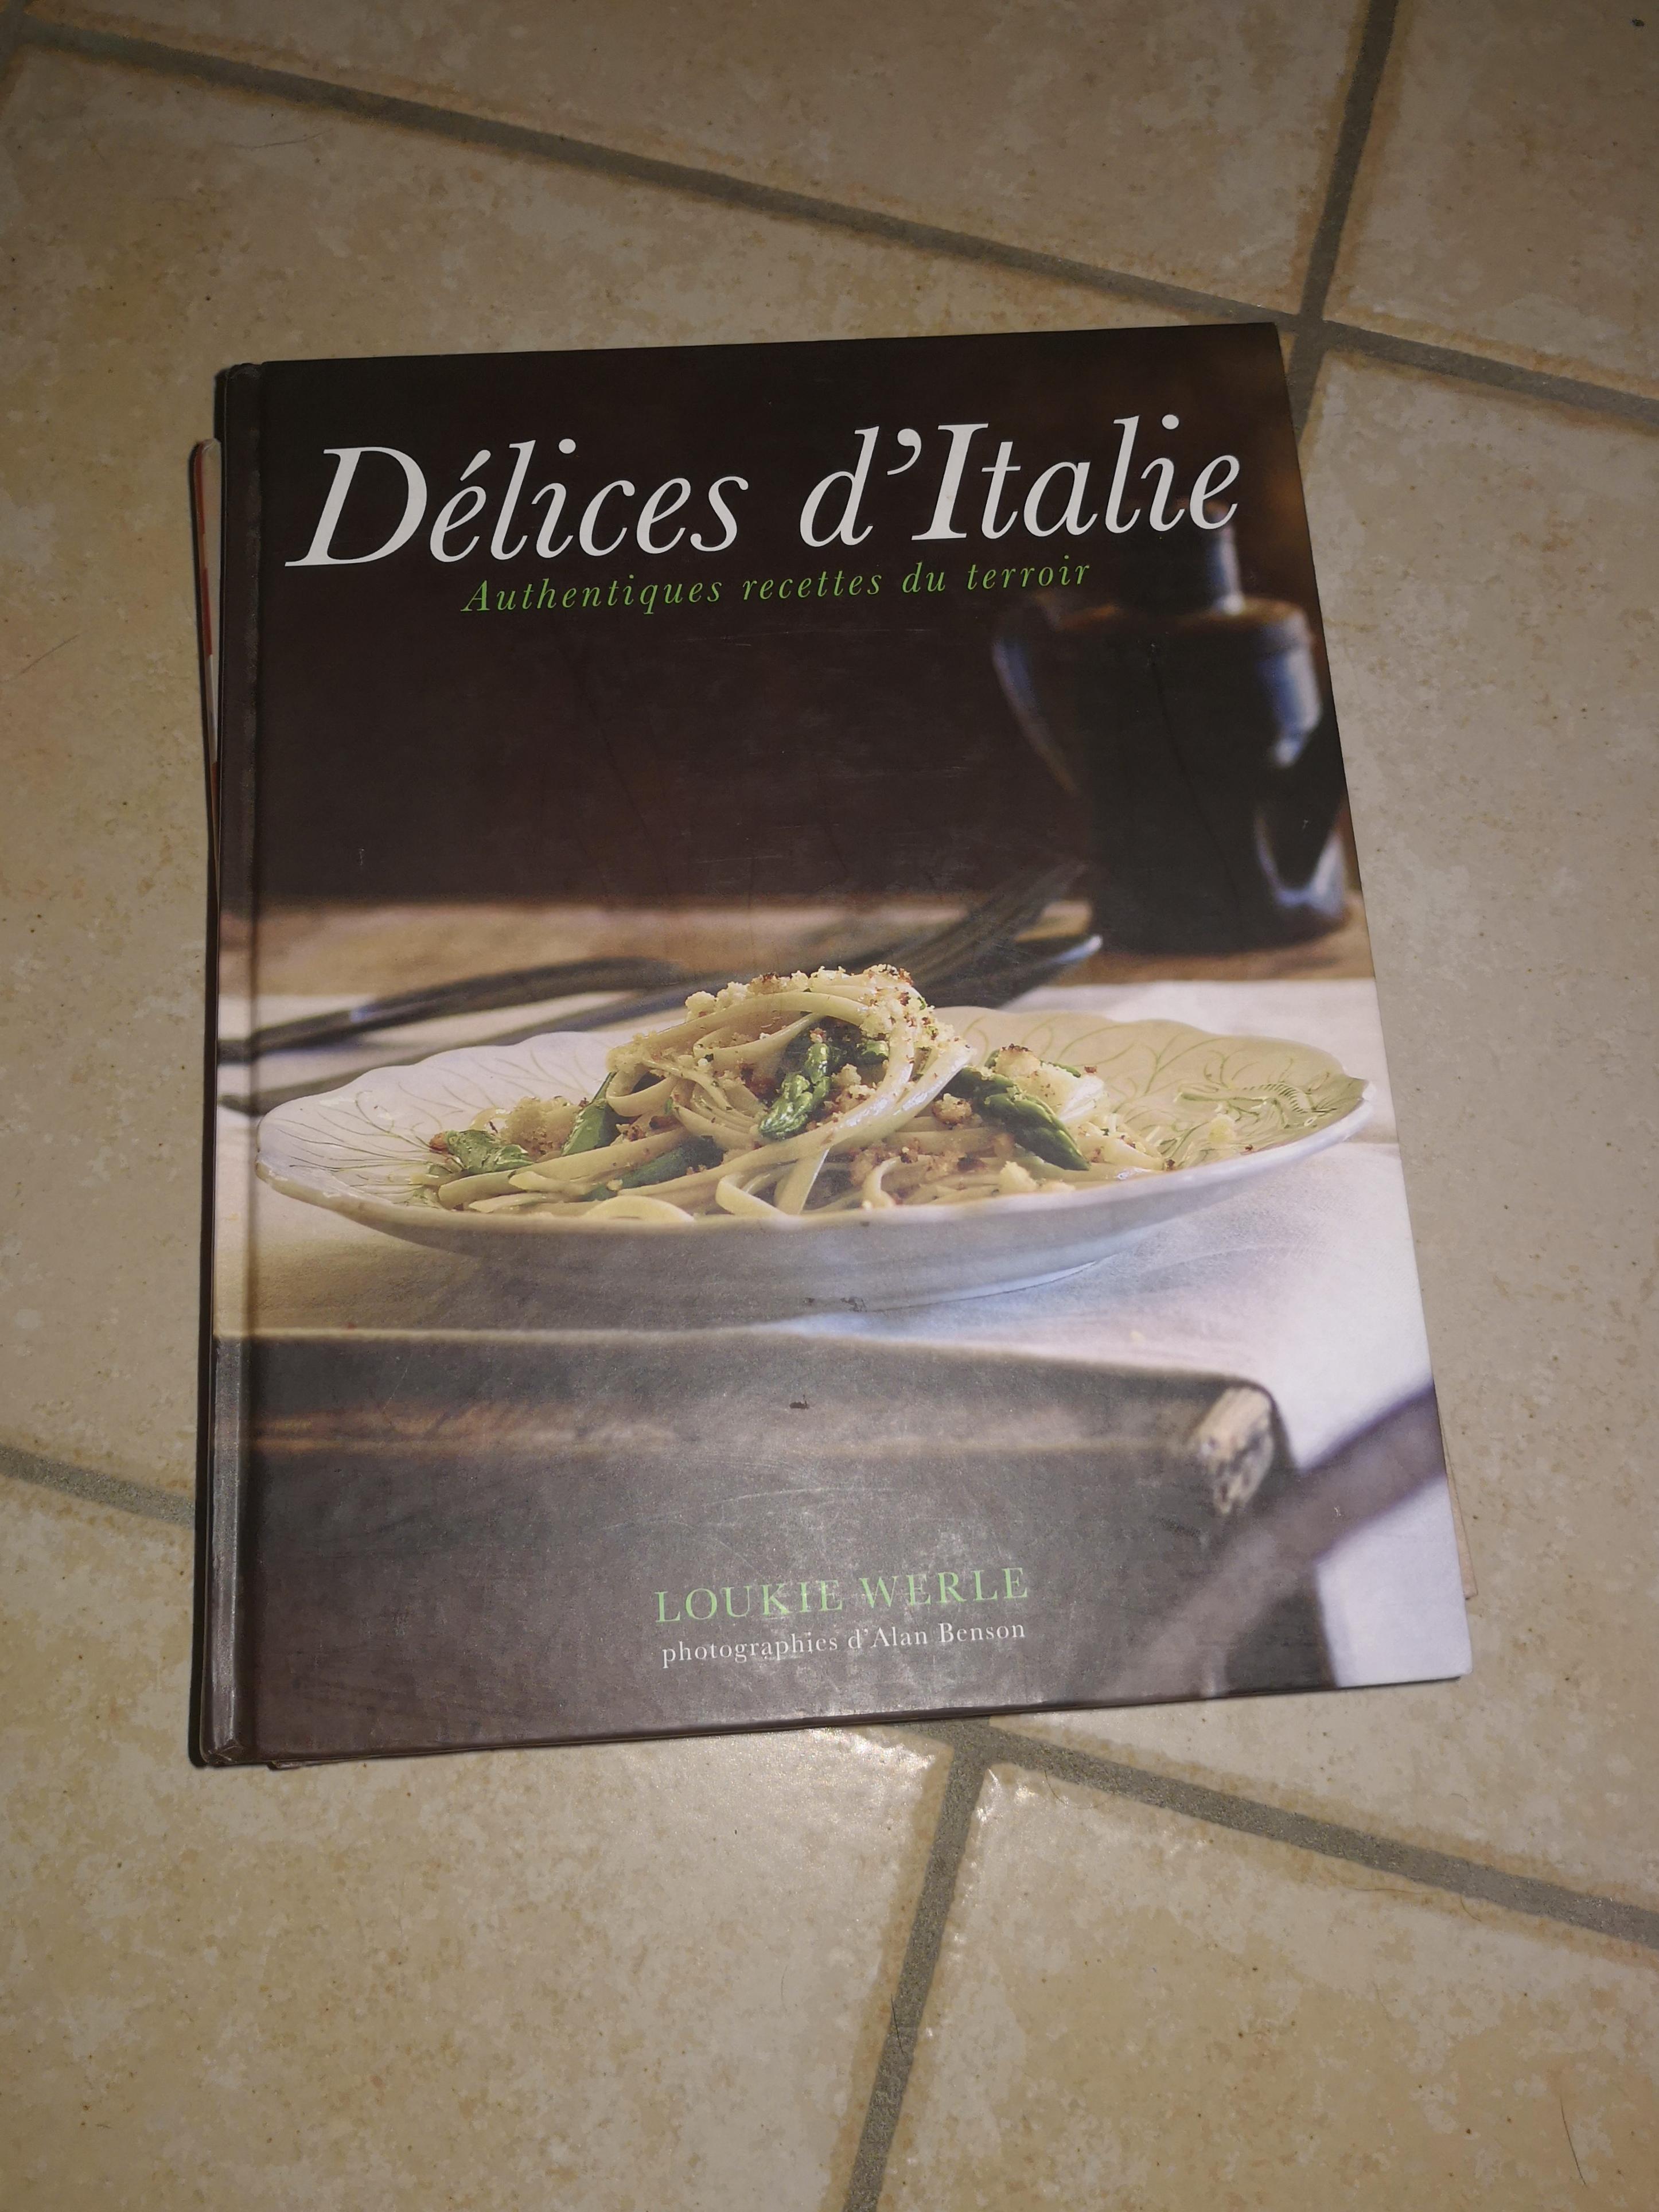 troc de troc troc livre délice d'italie et livre sur les légumes image 1